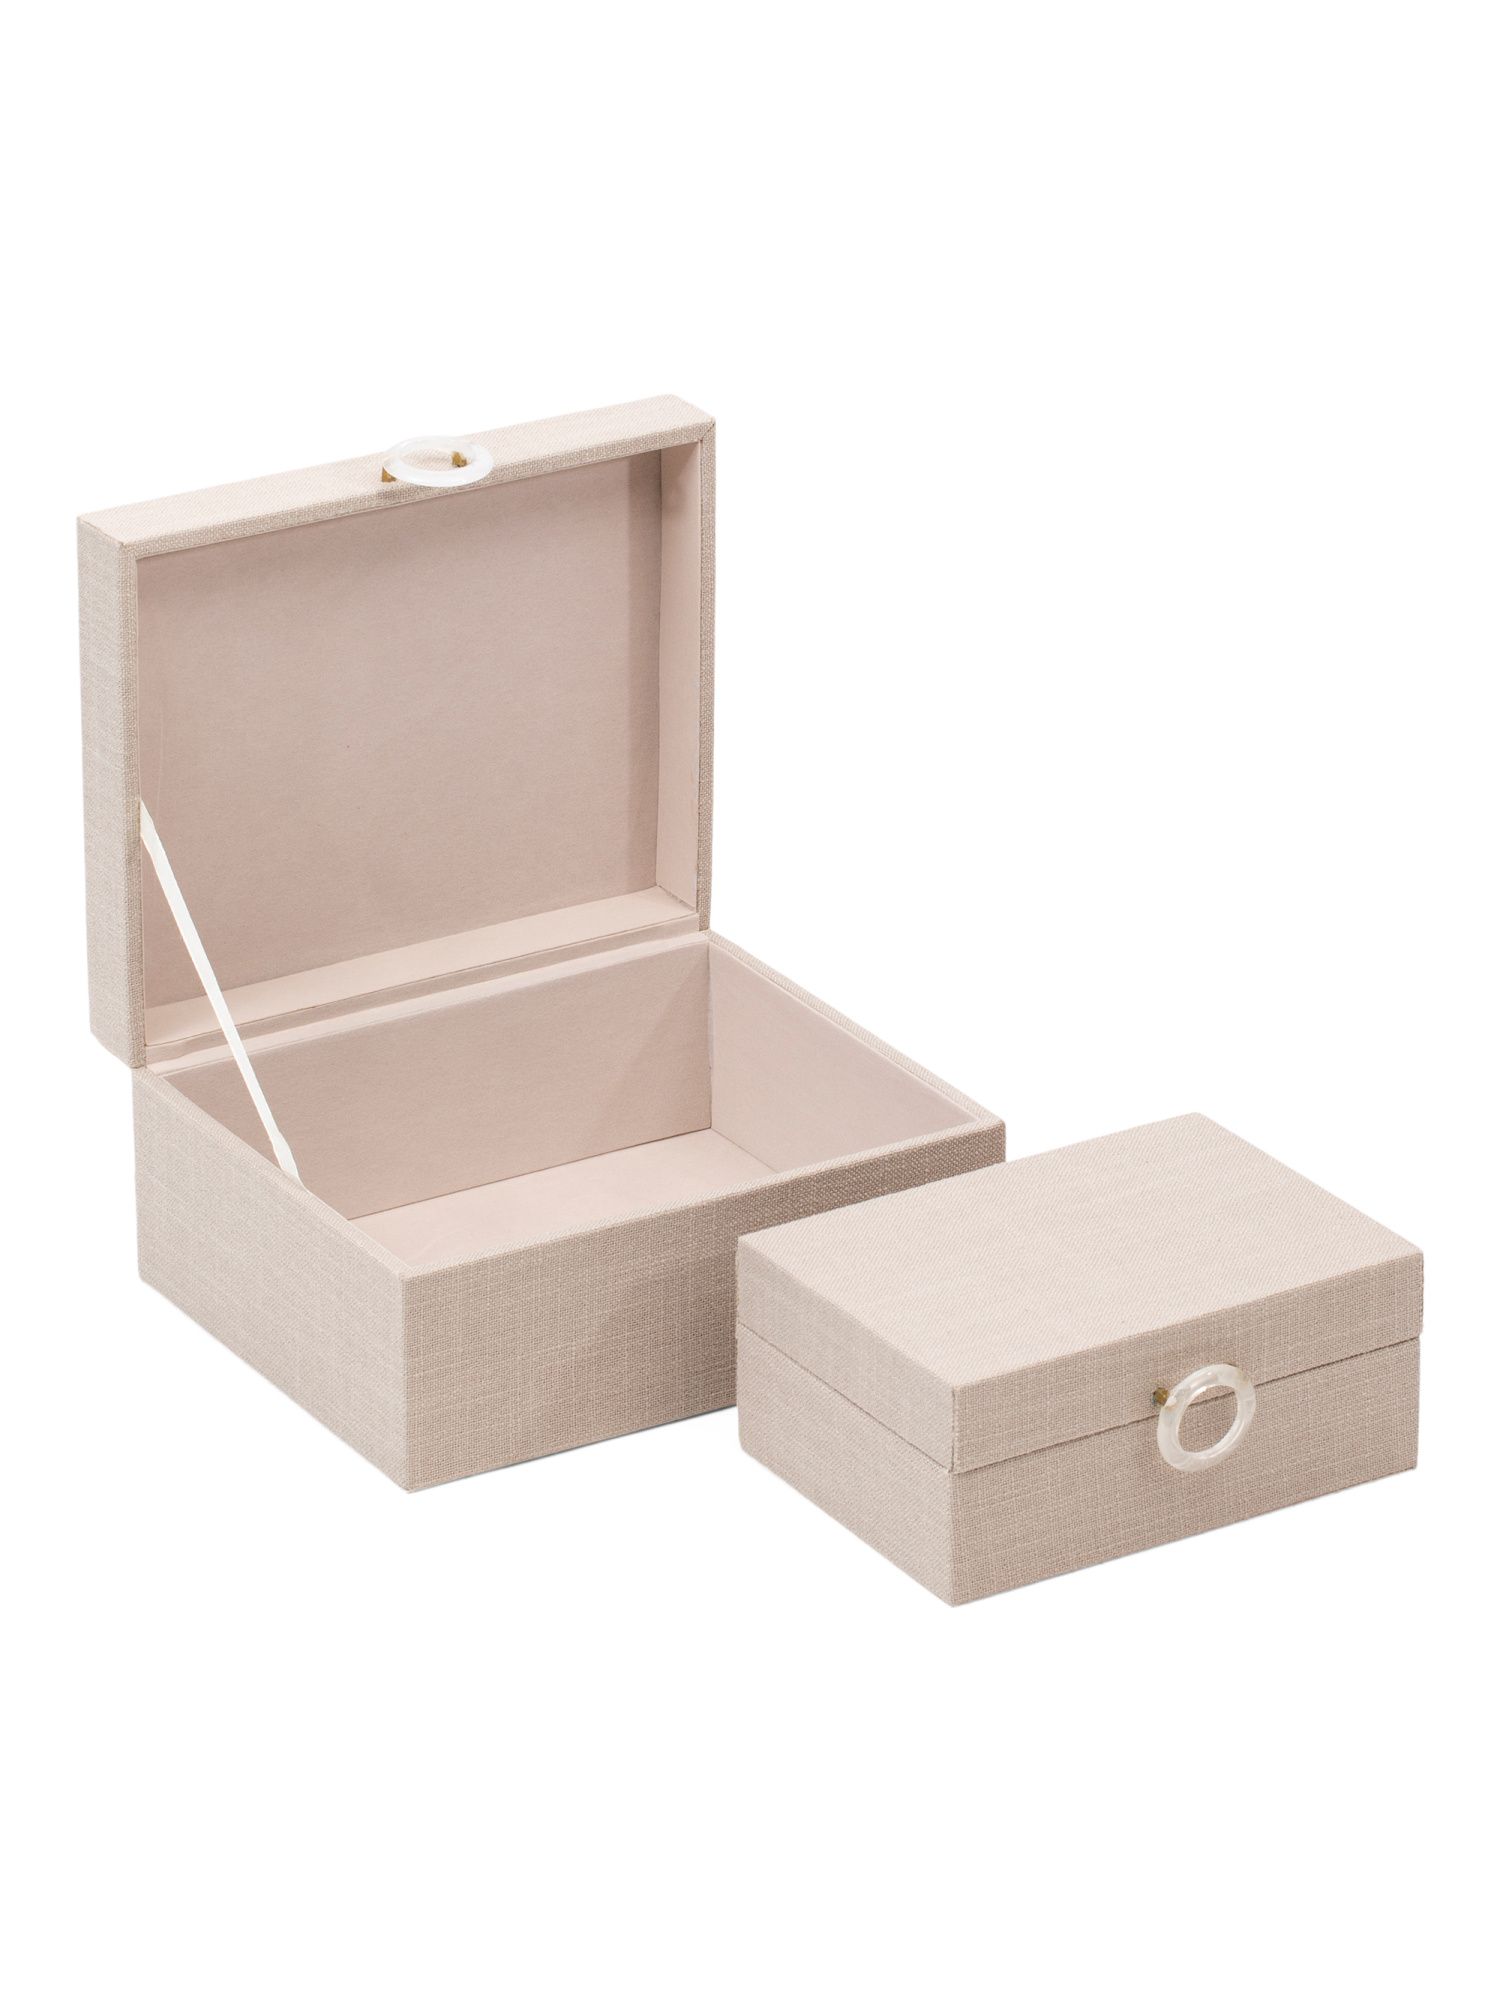 2pc Decorative Boxes | TJ Maxx